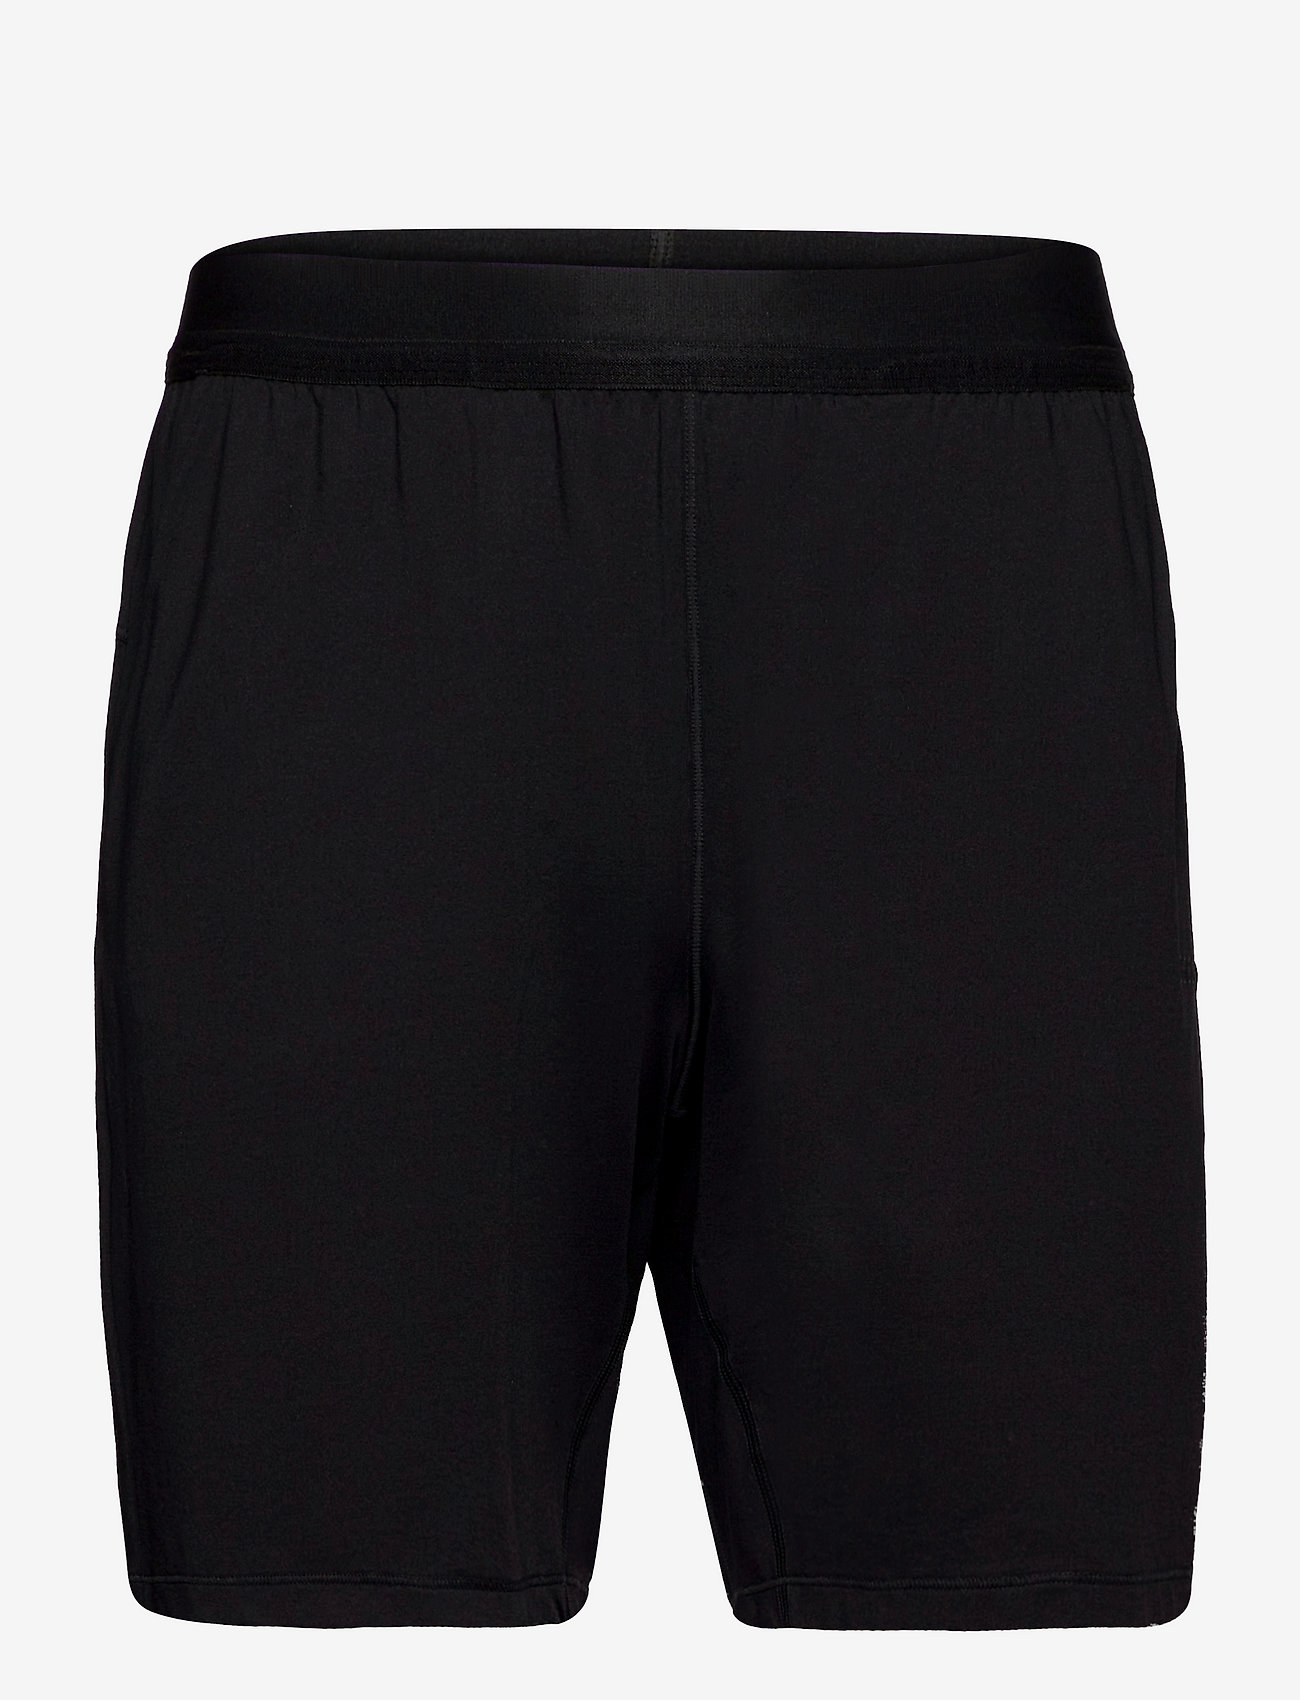 Casall - M Elastic Shorts - training shorts - black - 0